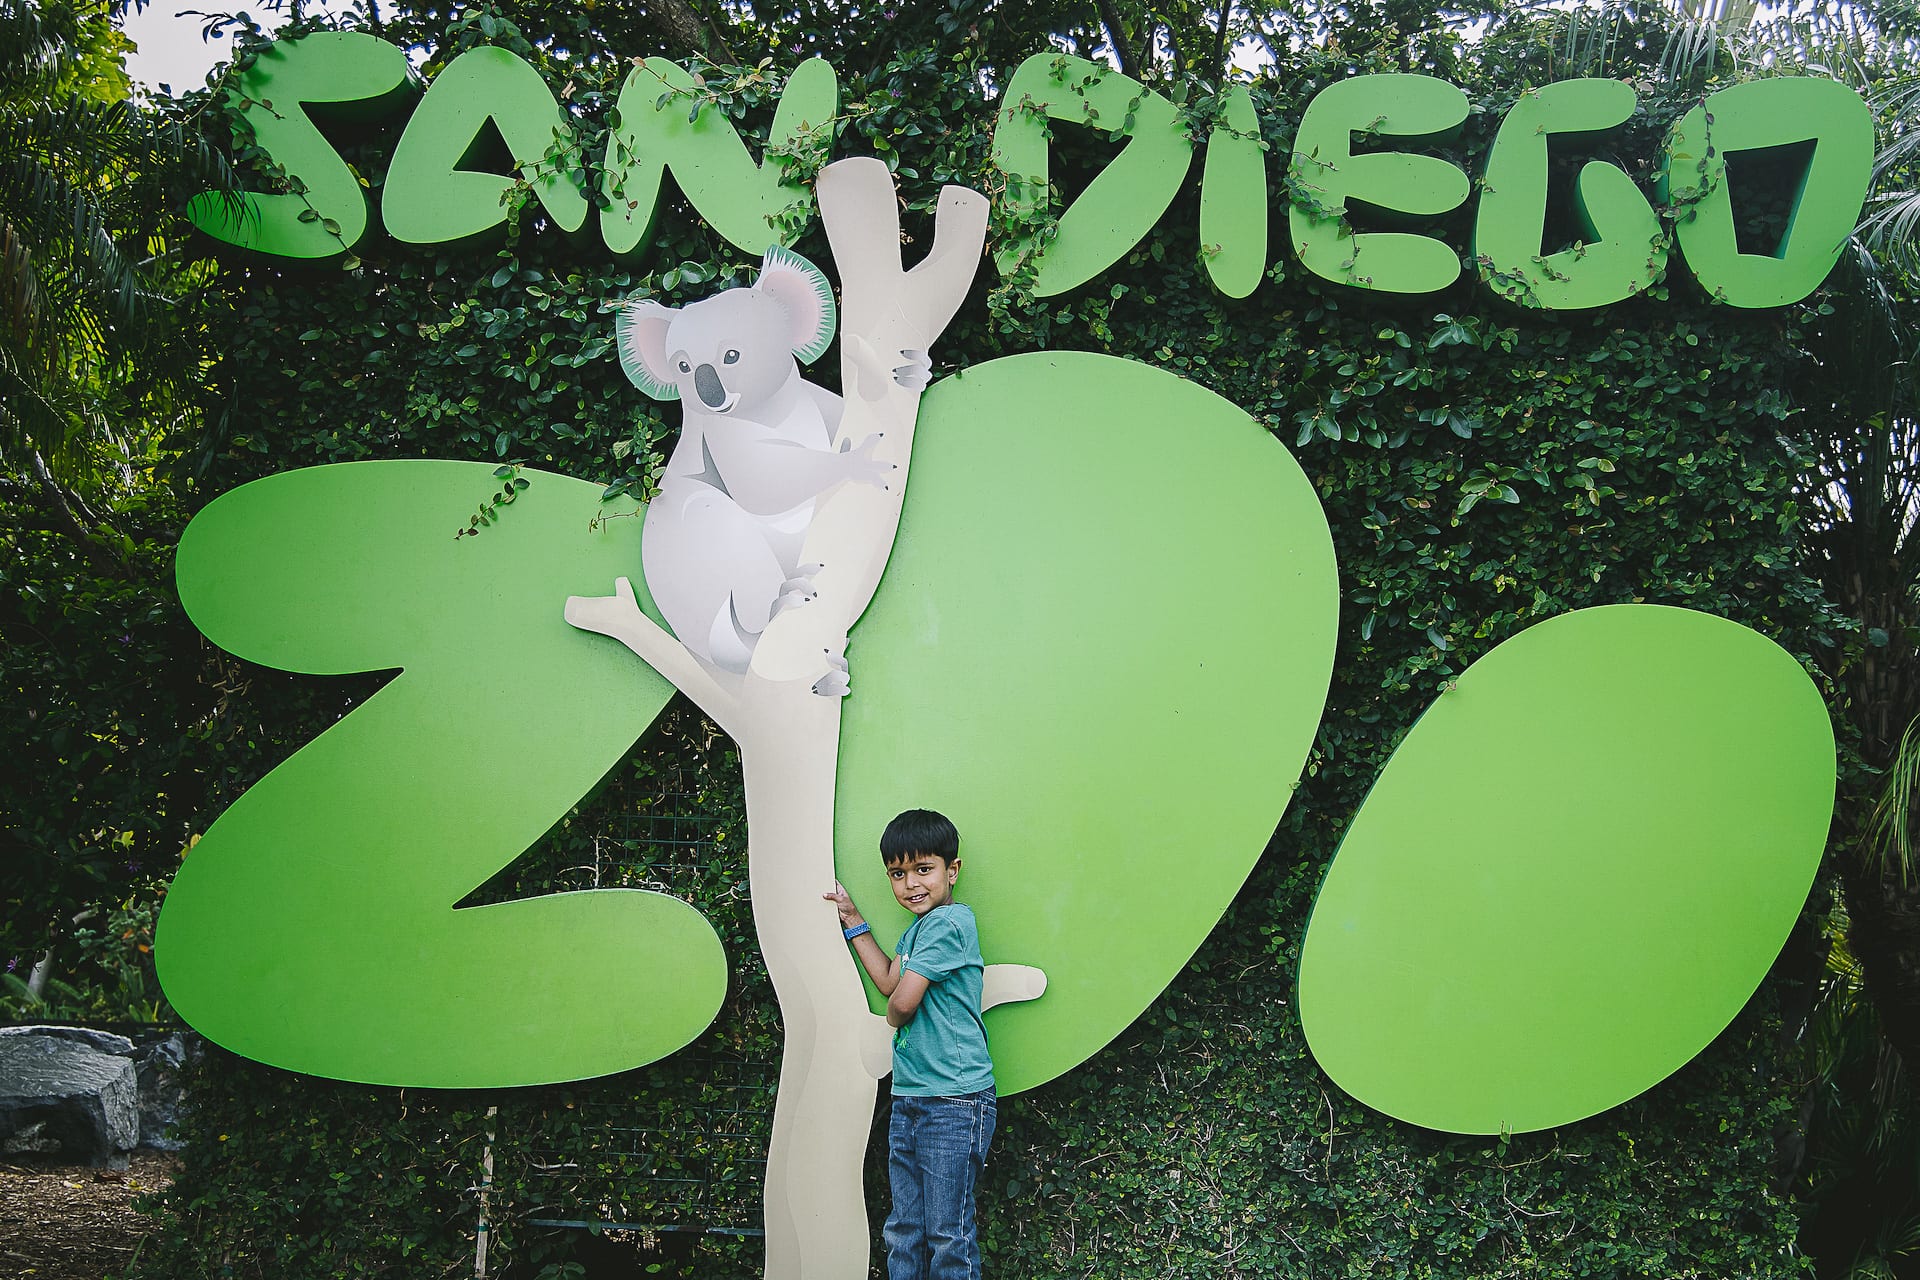 San Diego Zoo and Safari #travel #photography #zoo #safari